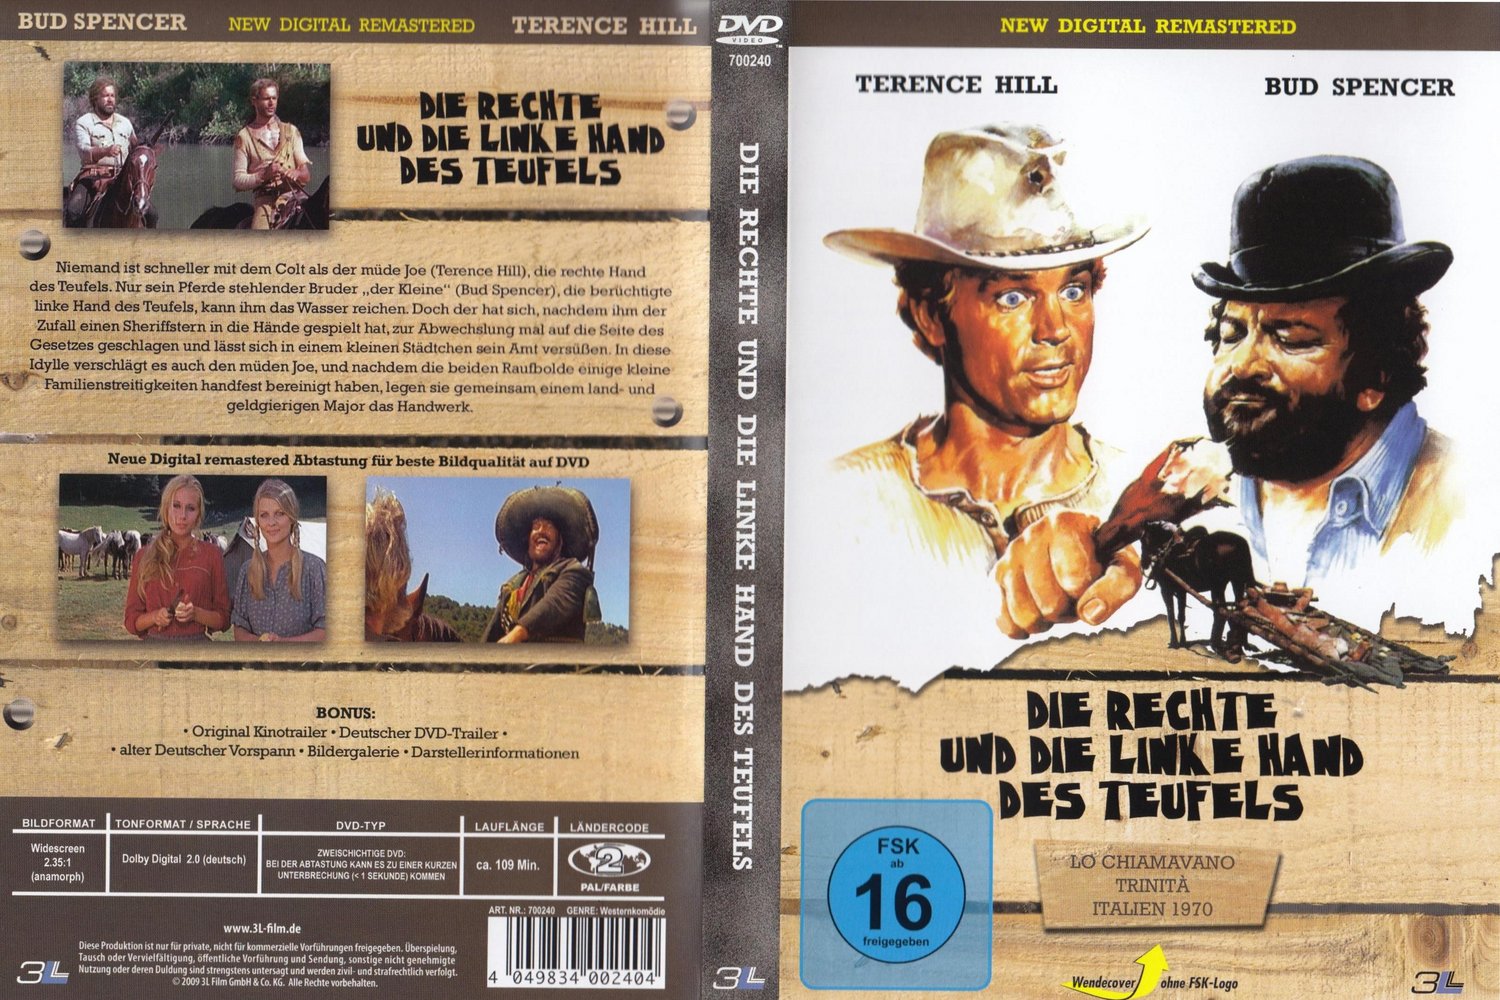 Terence Hill - Bud Spencer - RECHTE & DIE LINKE HAND DES TEUFELS